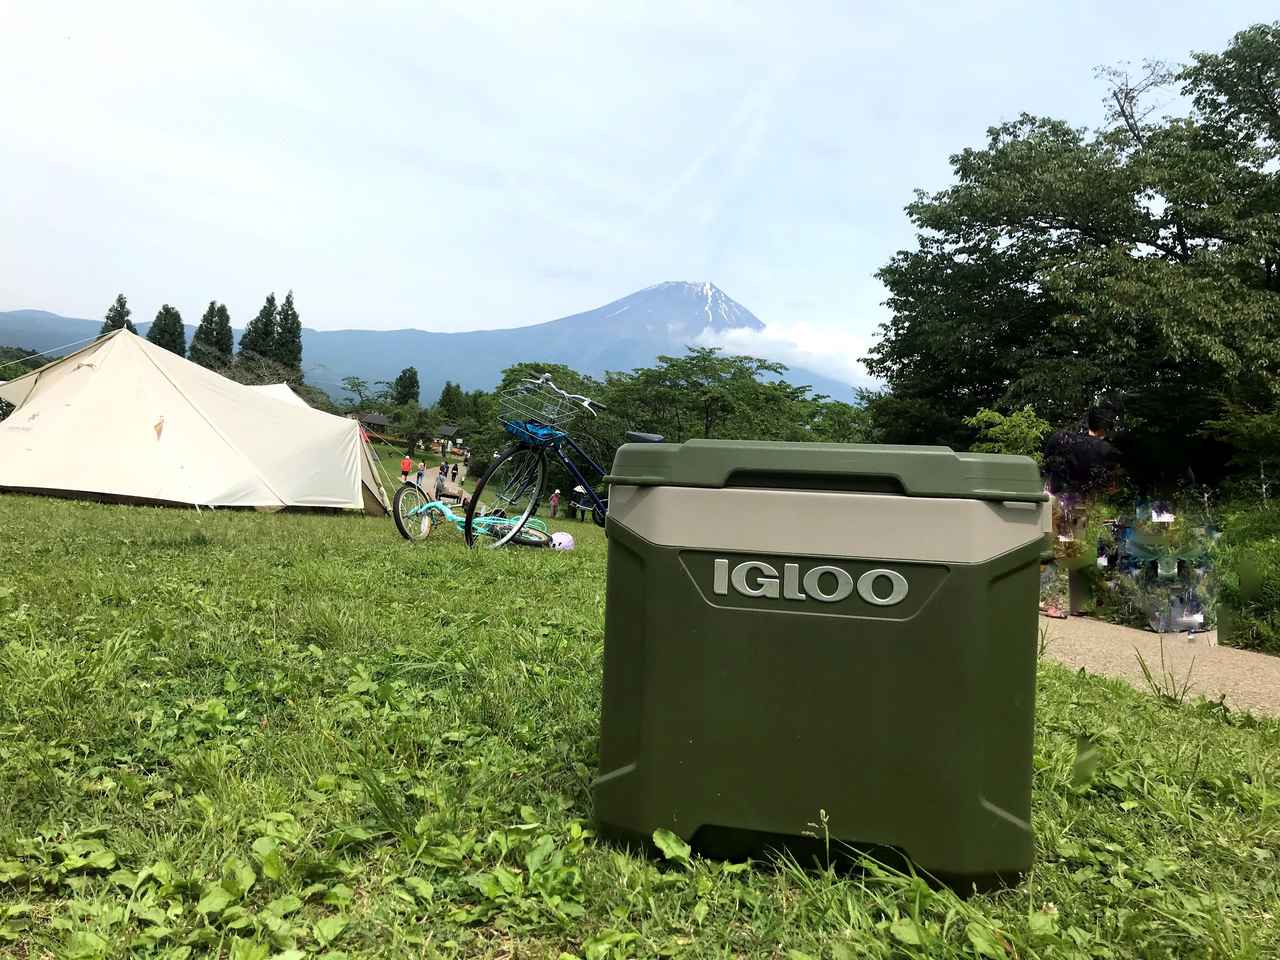 イグルー Igloo のクーラーボックスはまるでアウトドア冷蔵庫 我が家の大型クーラーの使い方テクニックを紹介 お役立ちキャンプ情報 21年06月15日 日本気象協会 Tenki Jp